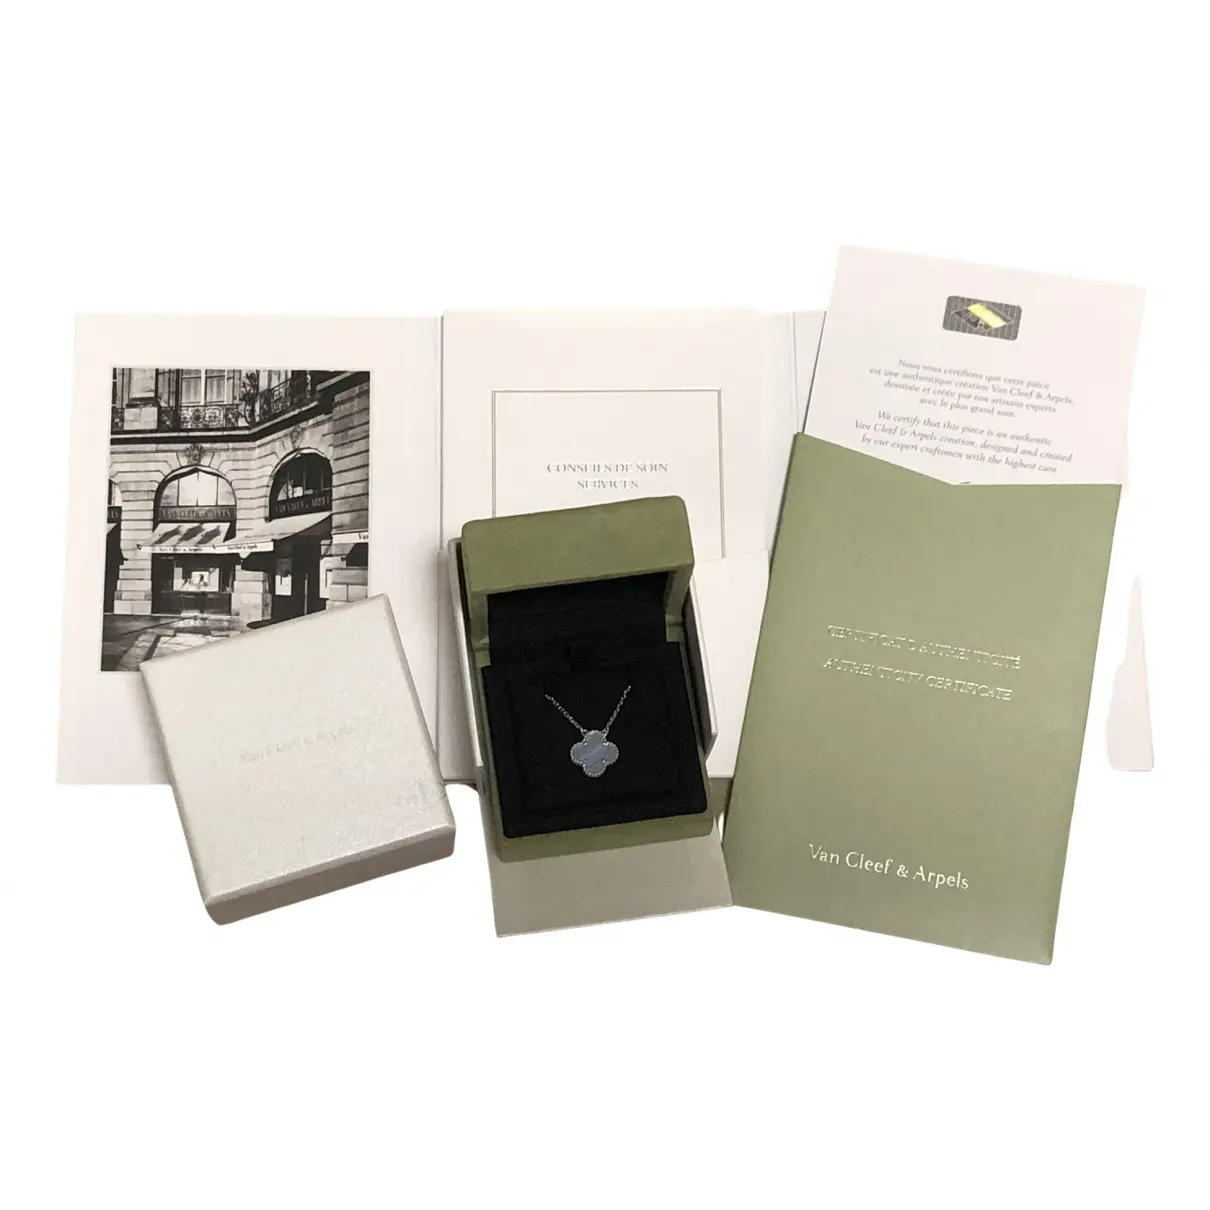 Buy Van Cleef & Arpels Vintage Alhambra crystal necklace online